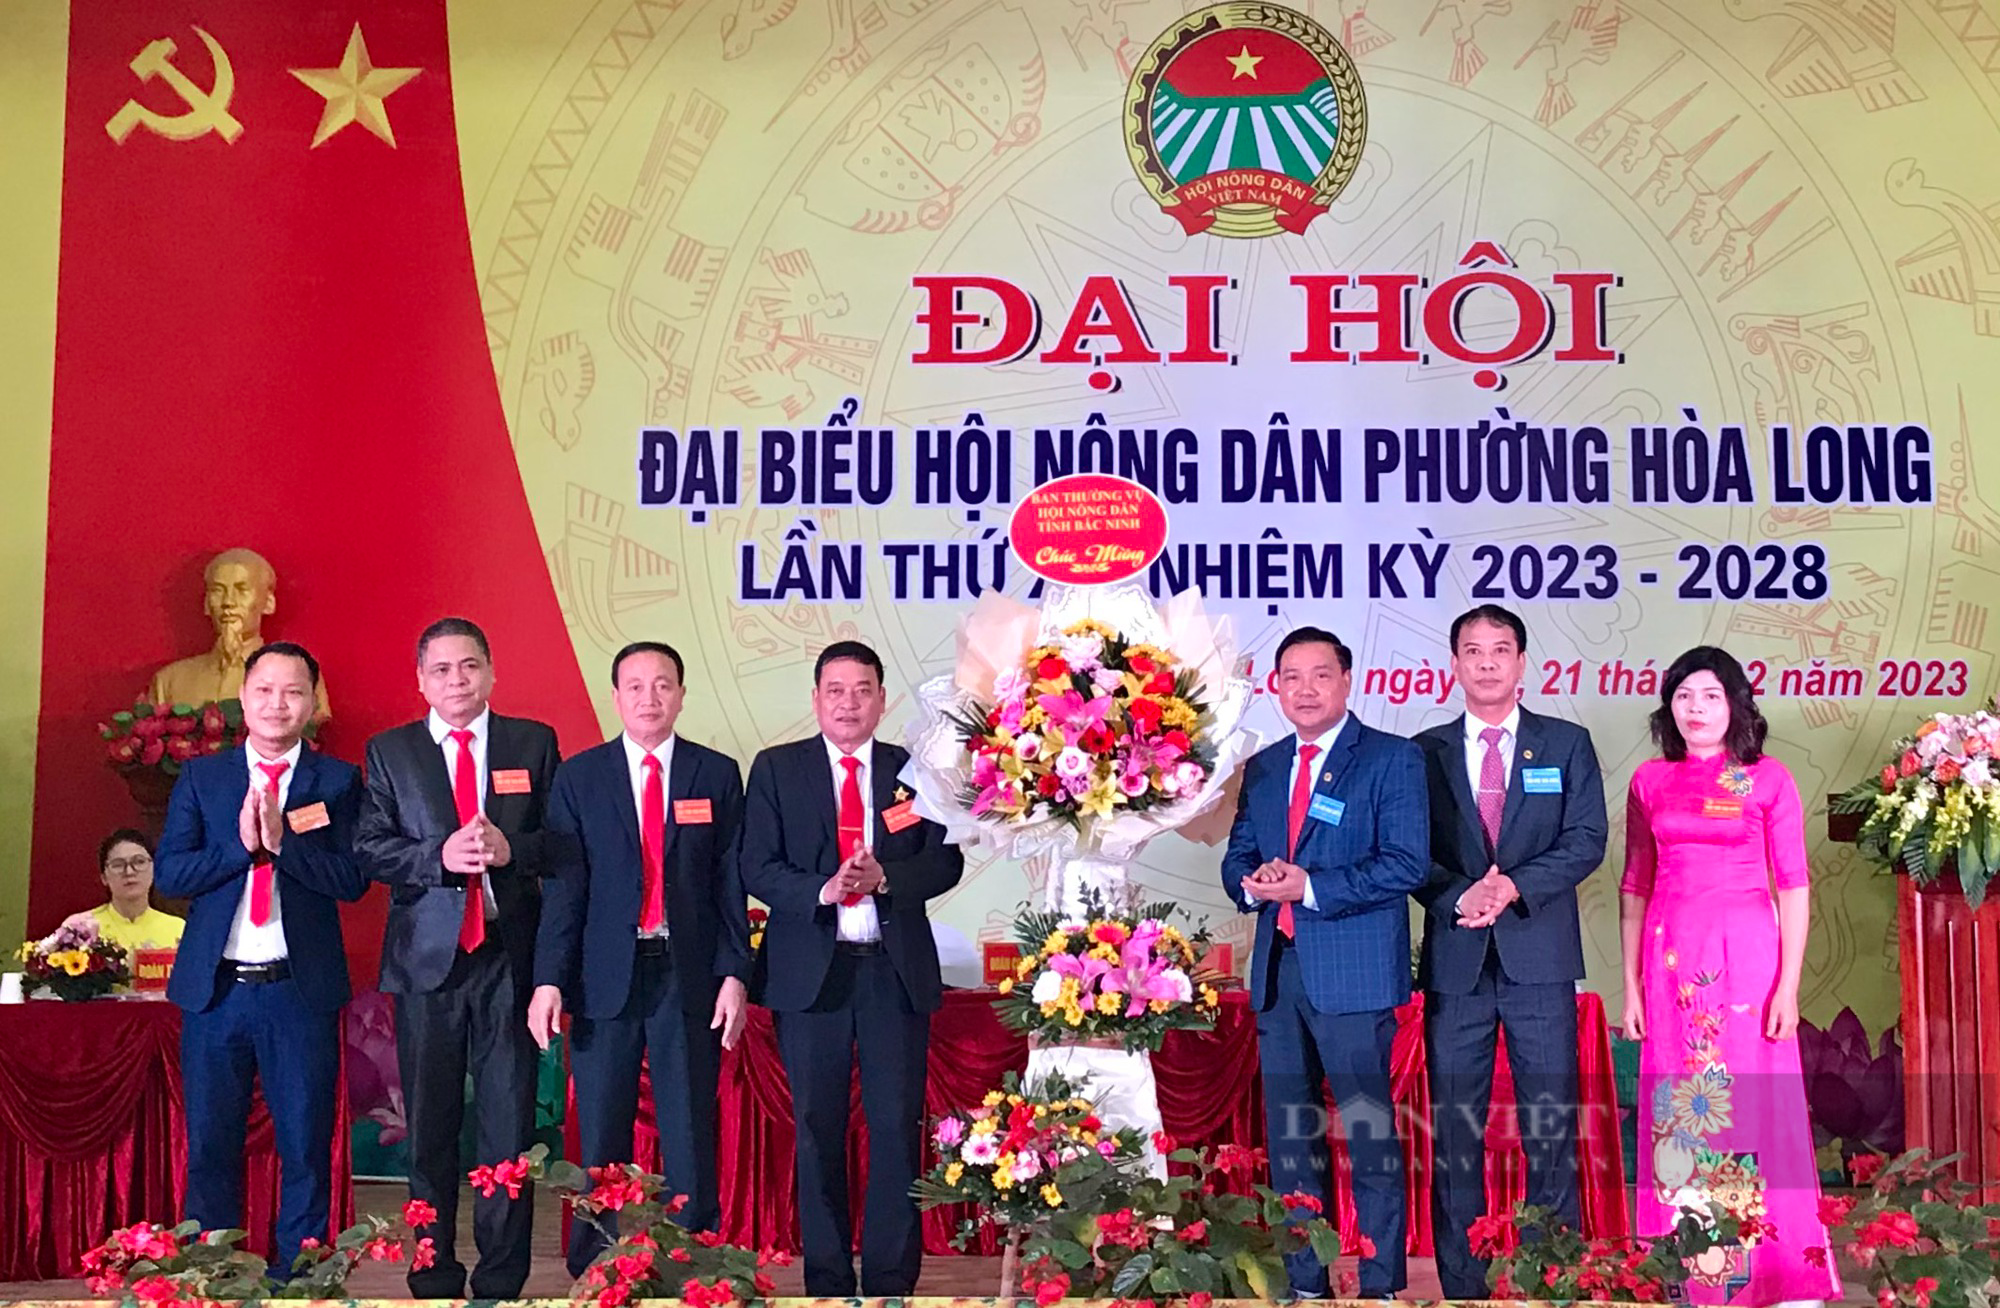 Bắc Ninh: Hoàn thành chỉ đạo Đại hội điểm Hội Nông dân cấp cơ sở - Ảnh 1.